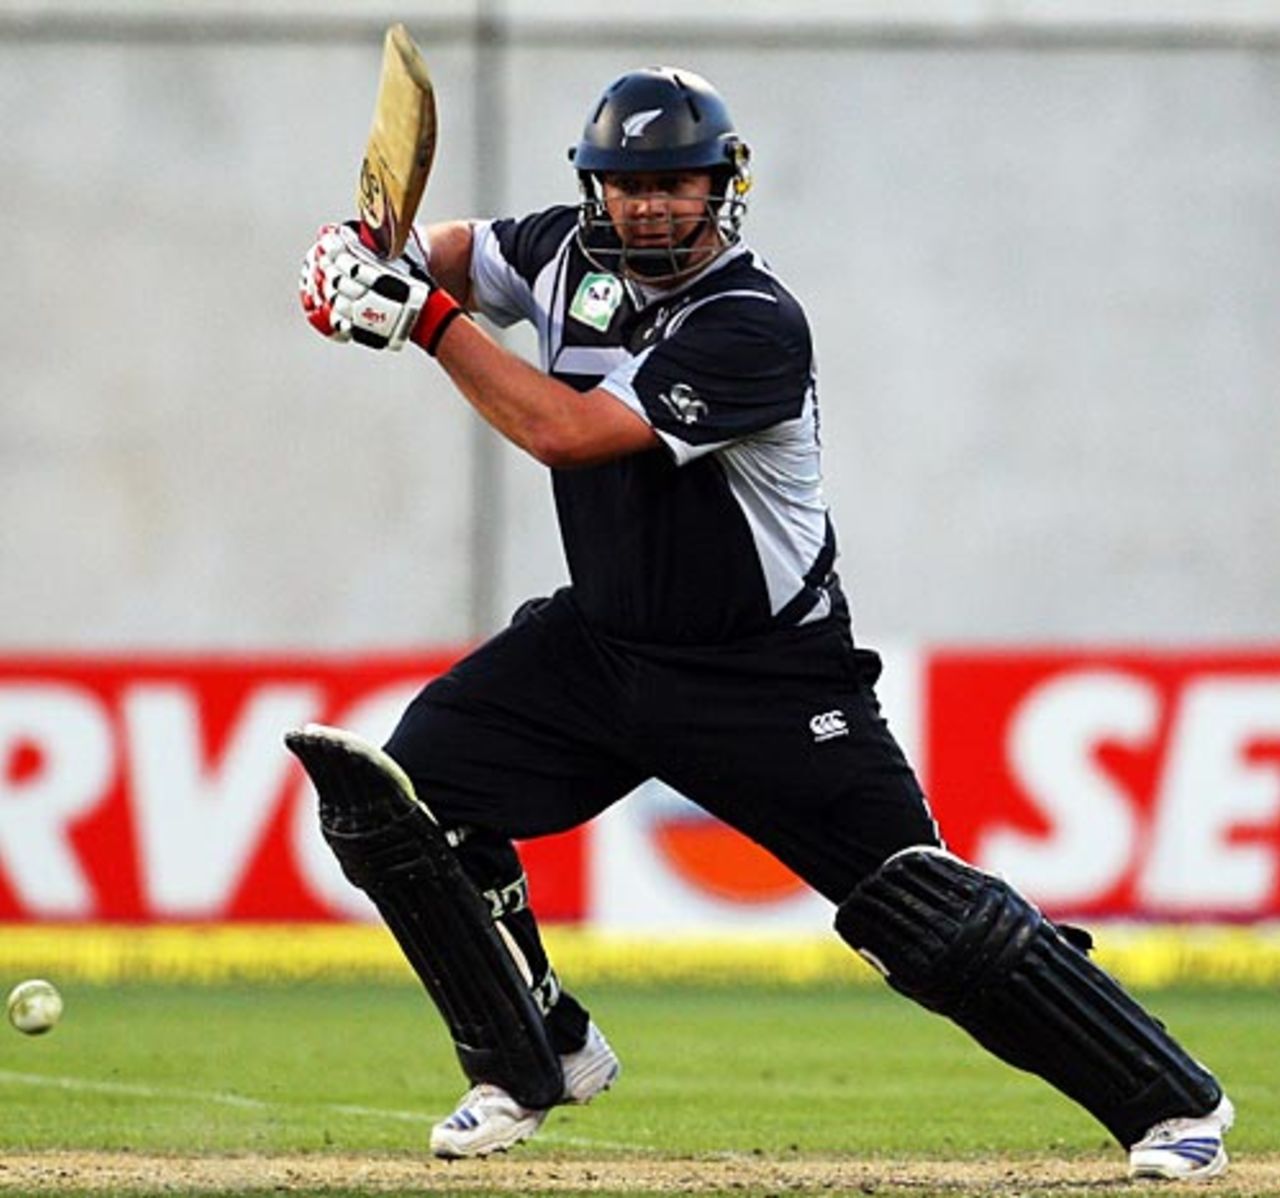 Jesse Ryder scored his maiden ODI hundred, New Zealand v India, 3rd ODI, Christchurch, March 8, 2009